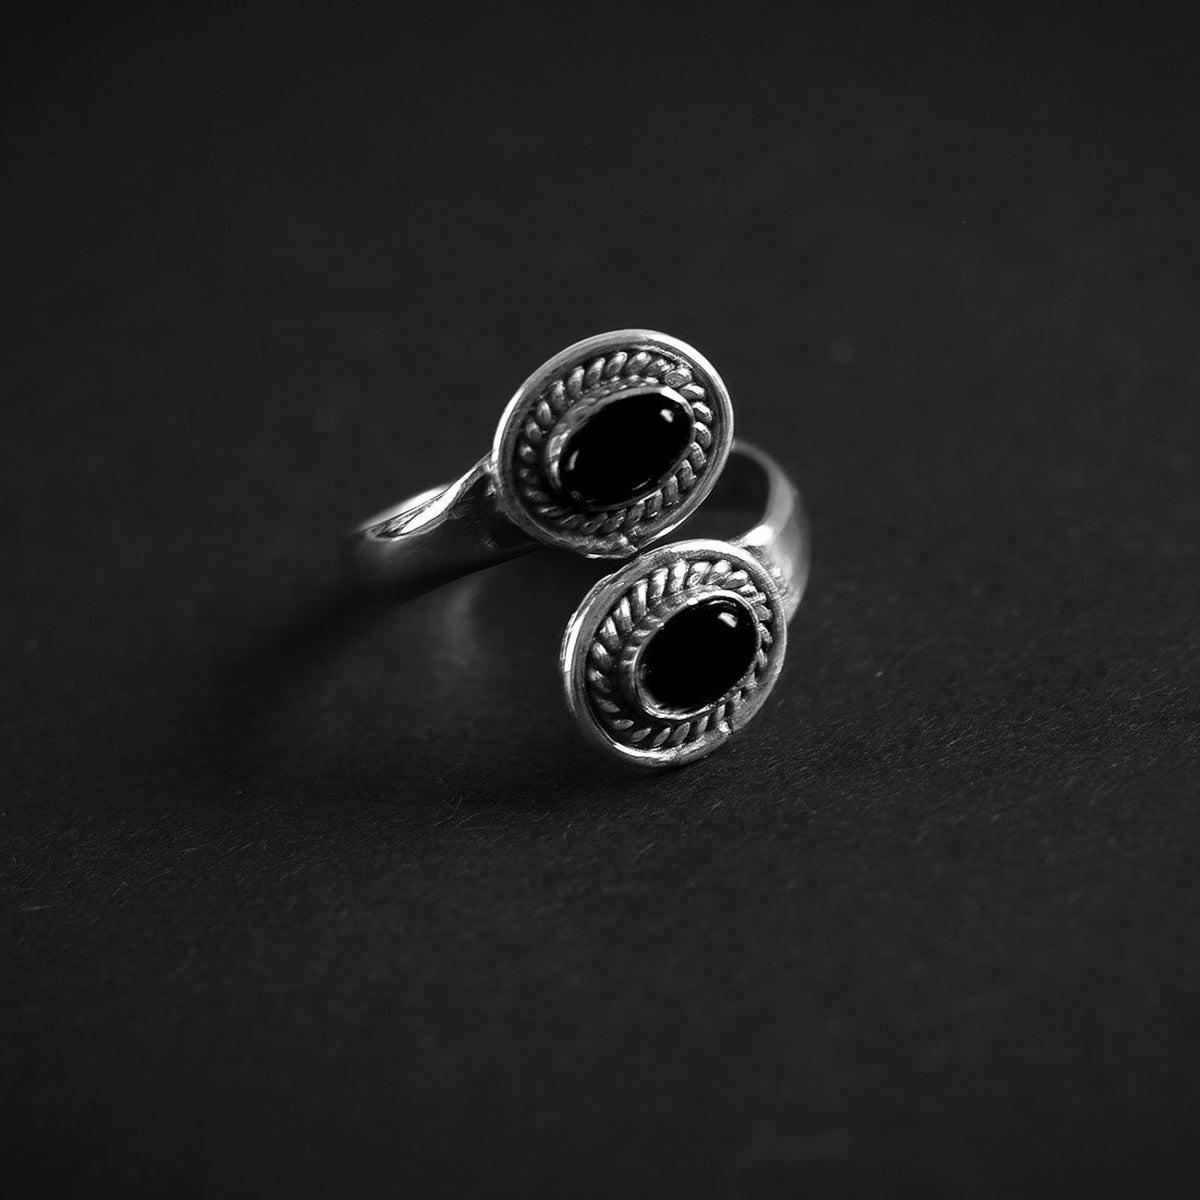 Denna ring är designat som et öppet band om fingret. Mässingens är tillräckligt mjuk och flexibel till att ringen kan justeras i storlek efter behov.. Svart agat